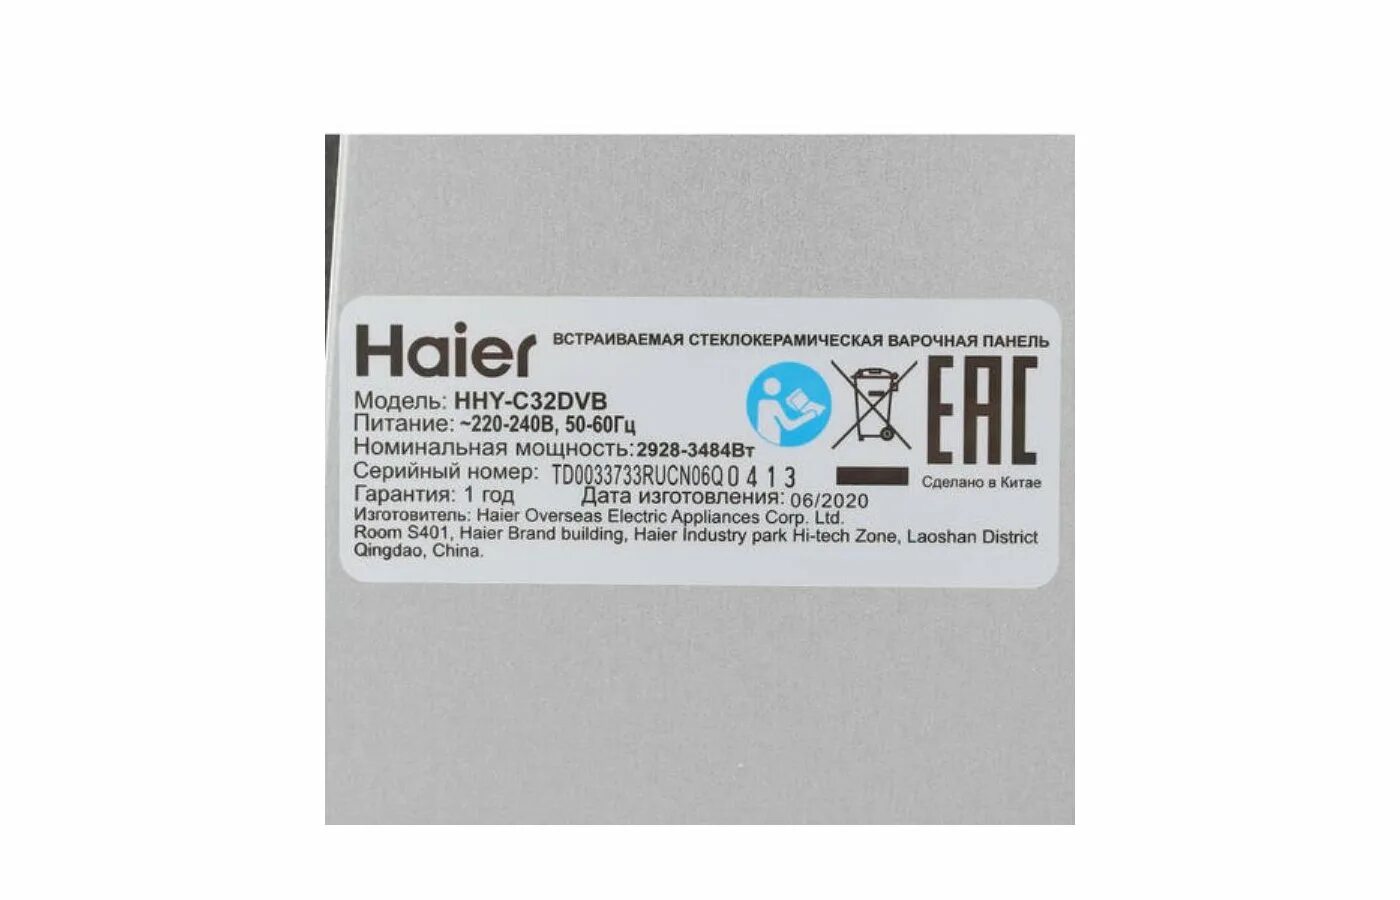 Варочная панель Haier HHY-c32dvb схема. Хайер HHY c32dvb. Варочная панель Haier HHY-c32dvb. Электрическая варочная панель Haier HHY-c32dvb черный. Haier hhy c32rvb